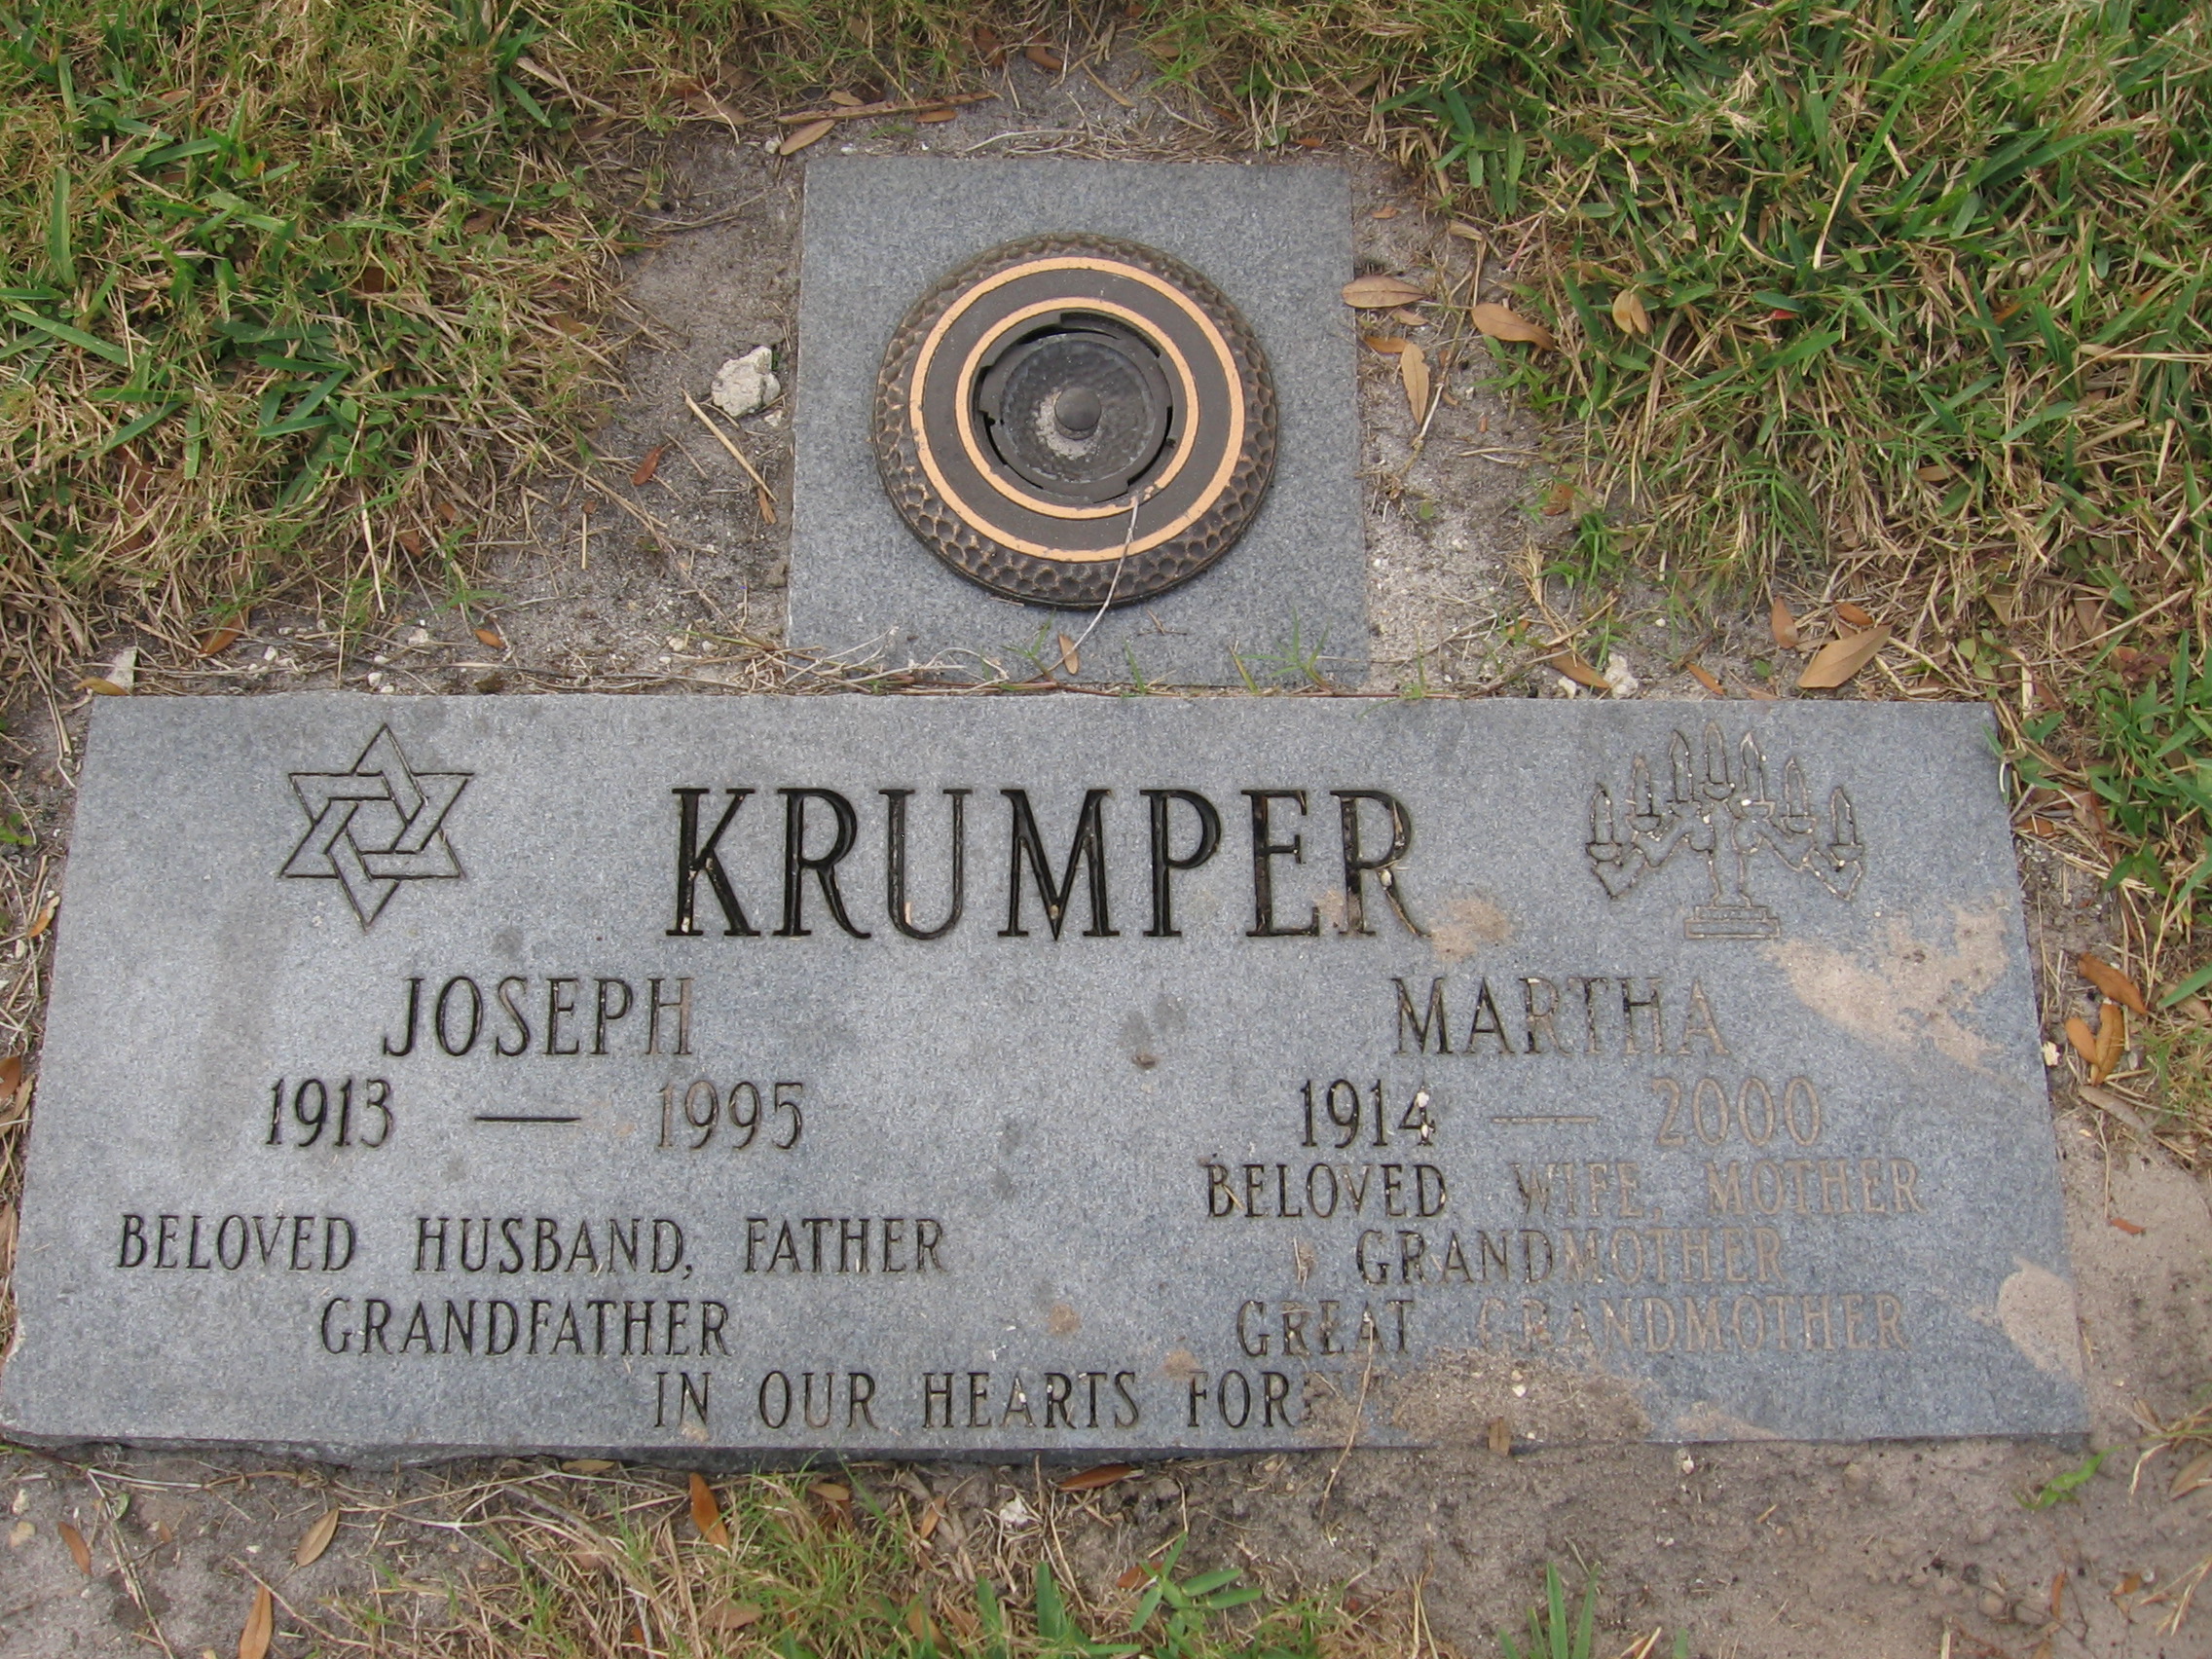 Joseph Krumper